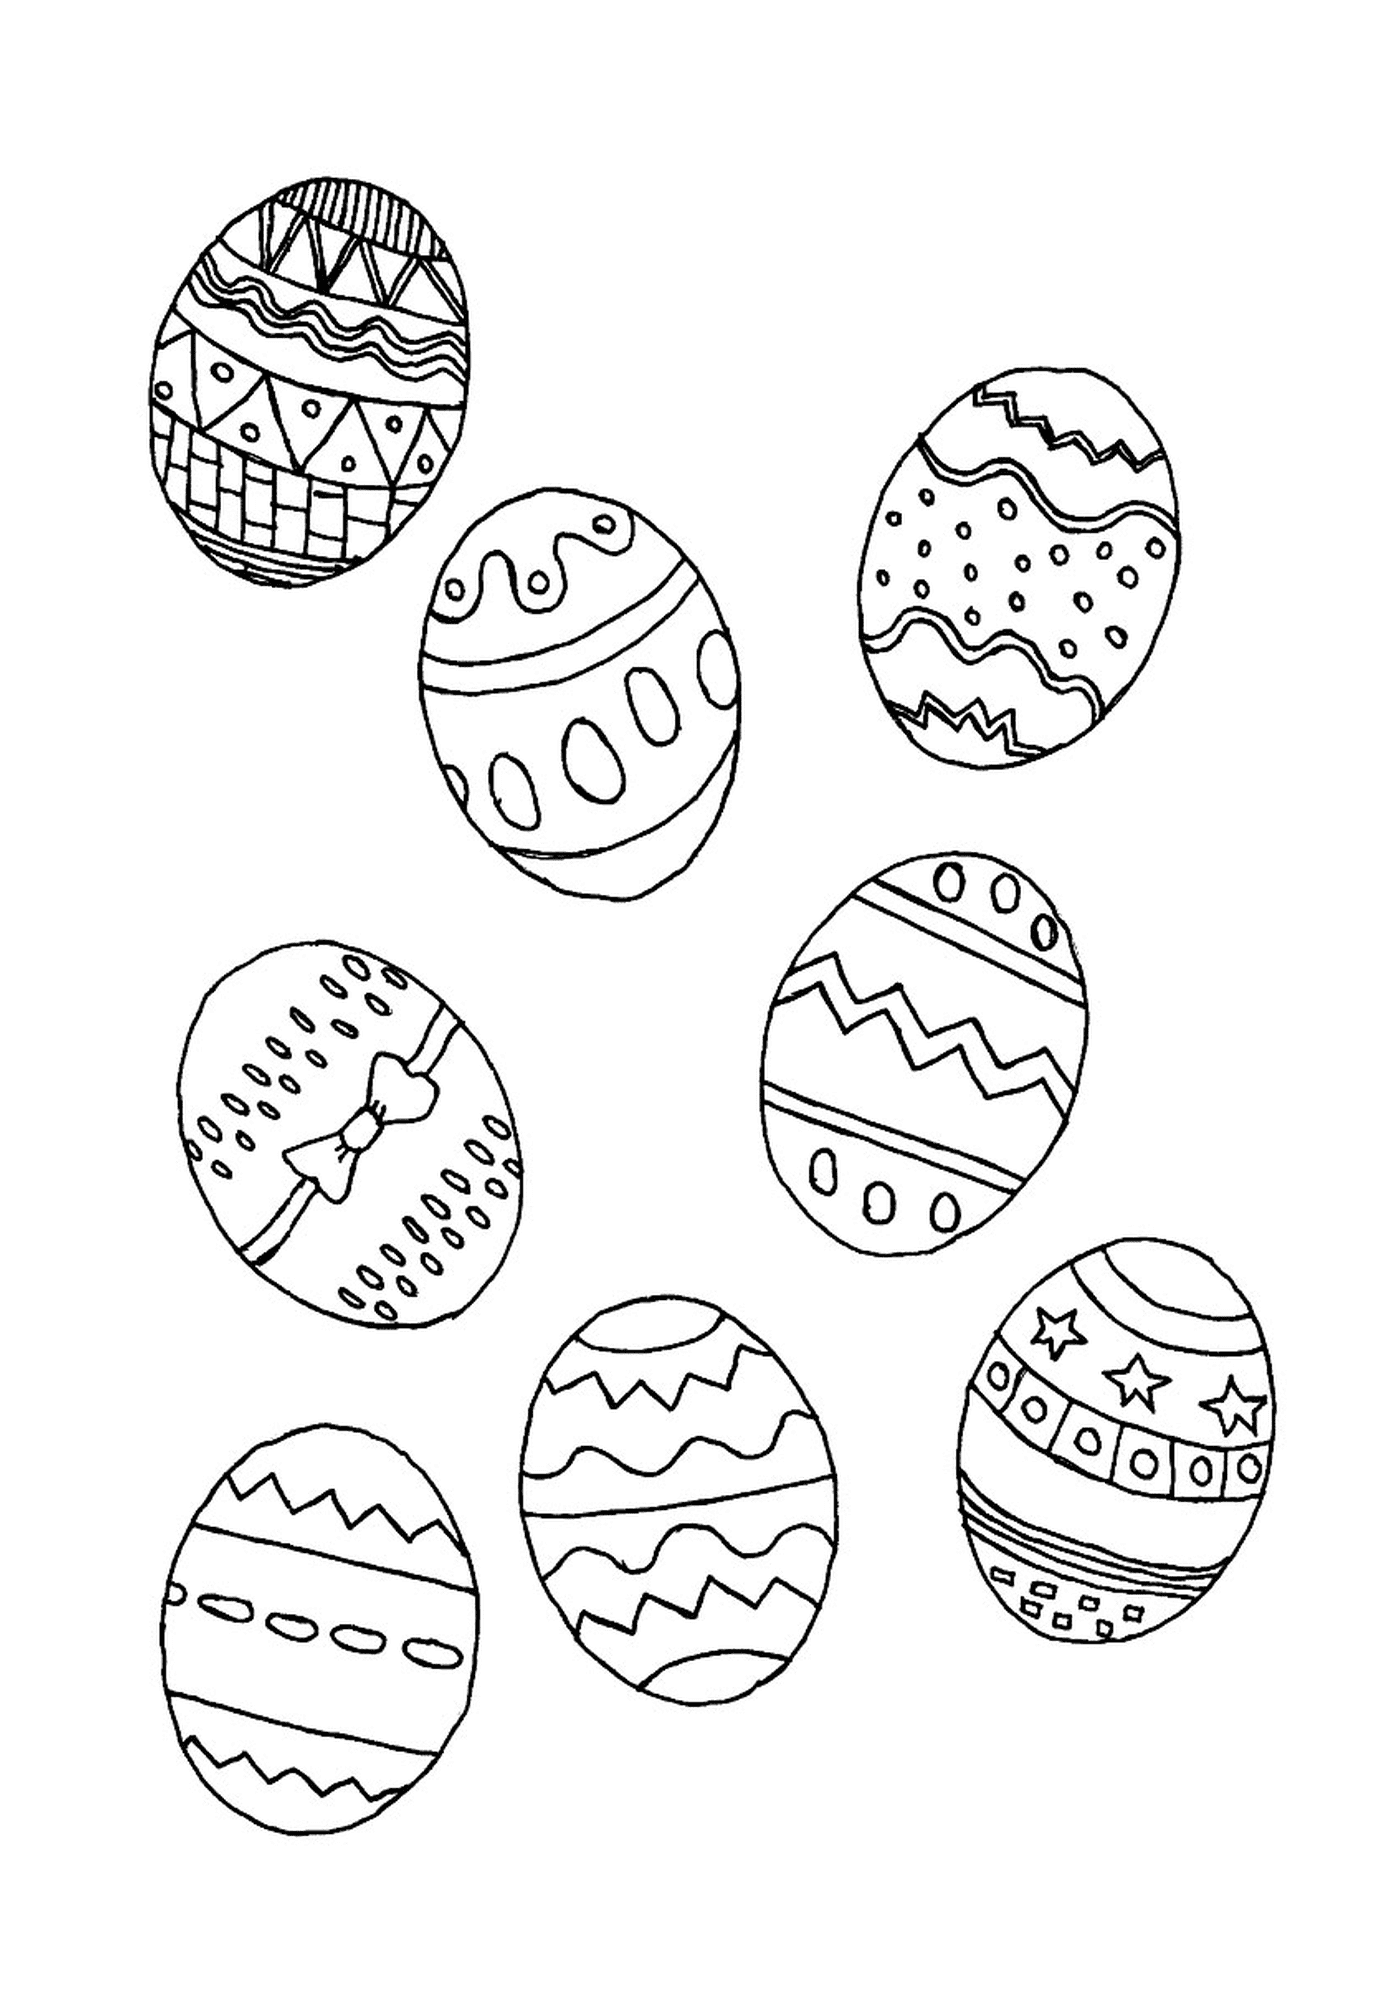  Selección de huevos de Pascua 